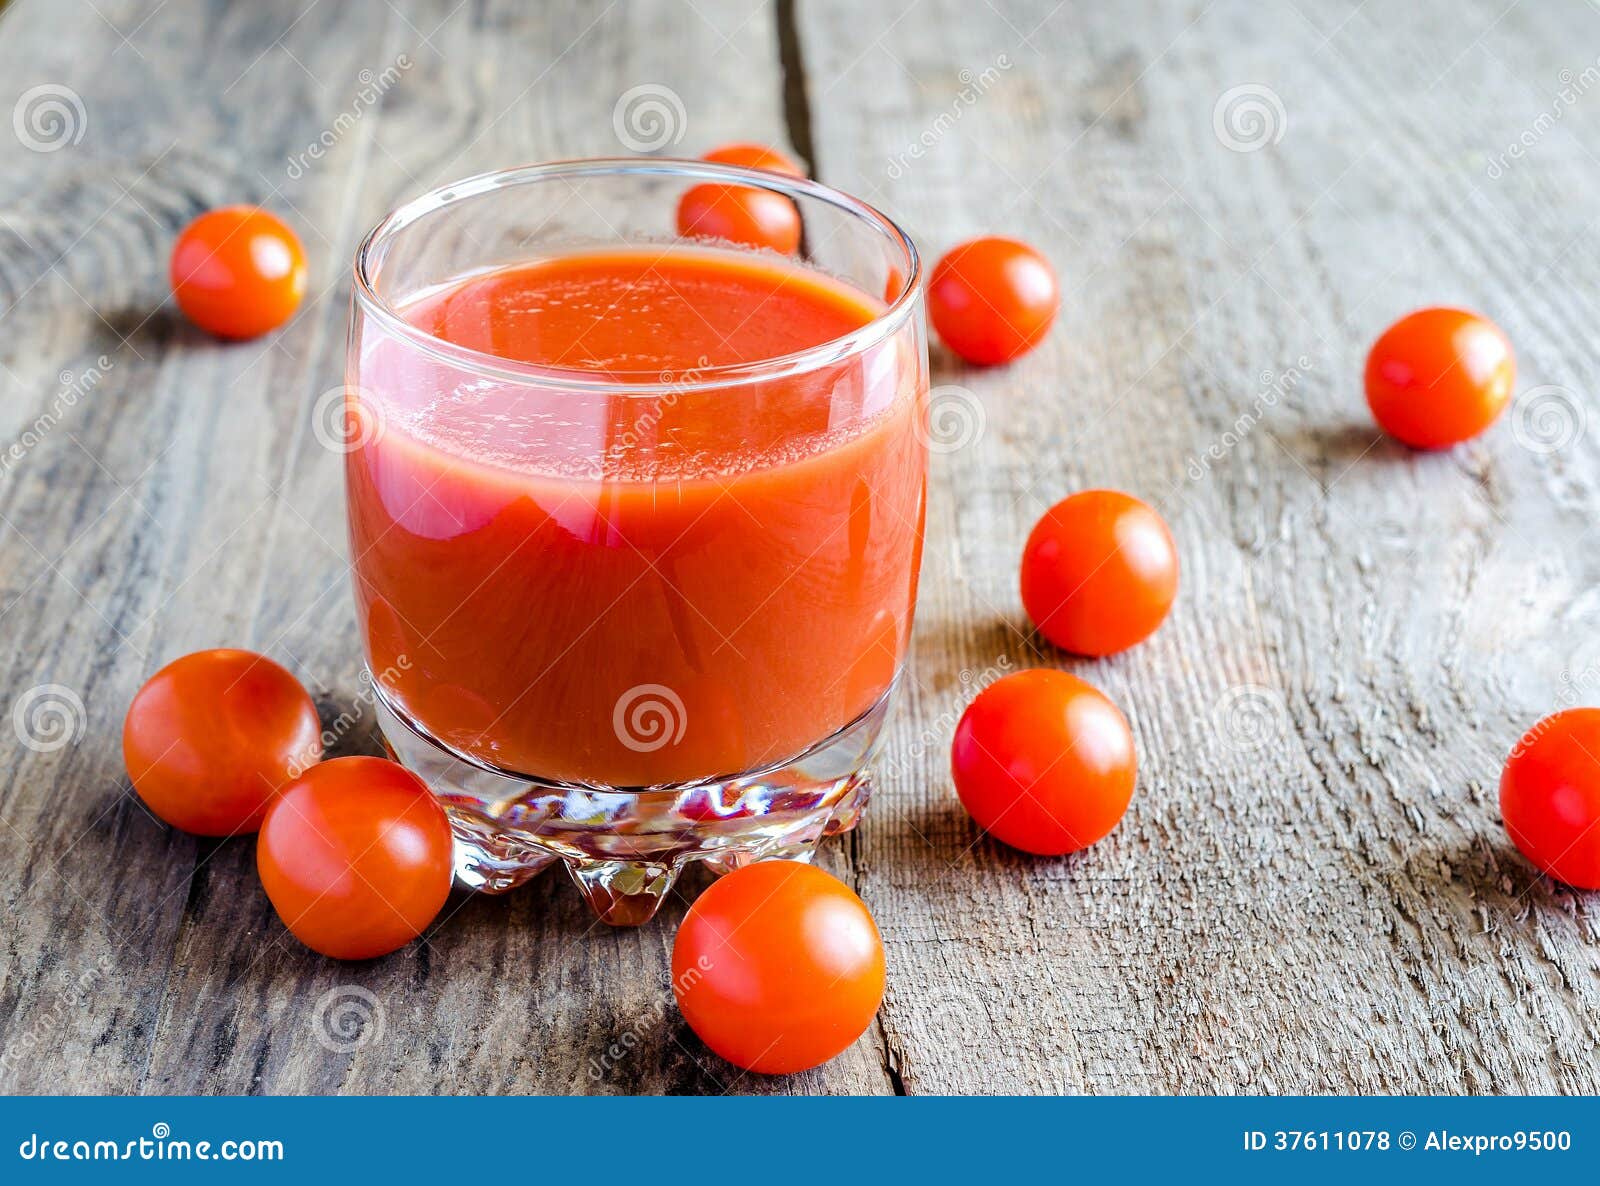 杯在桌上的新鲜的西红柿汁 库存图片. 图片 包括有 食物, 饮食, 荷兰芹, 推车, 有机, 土气, 厨房 - 59812577